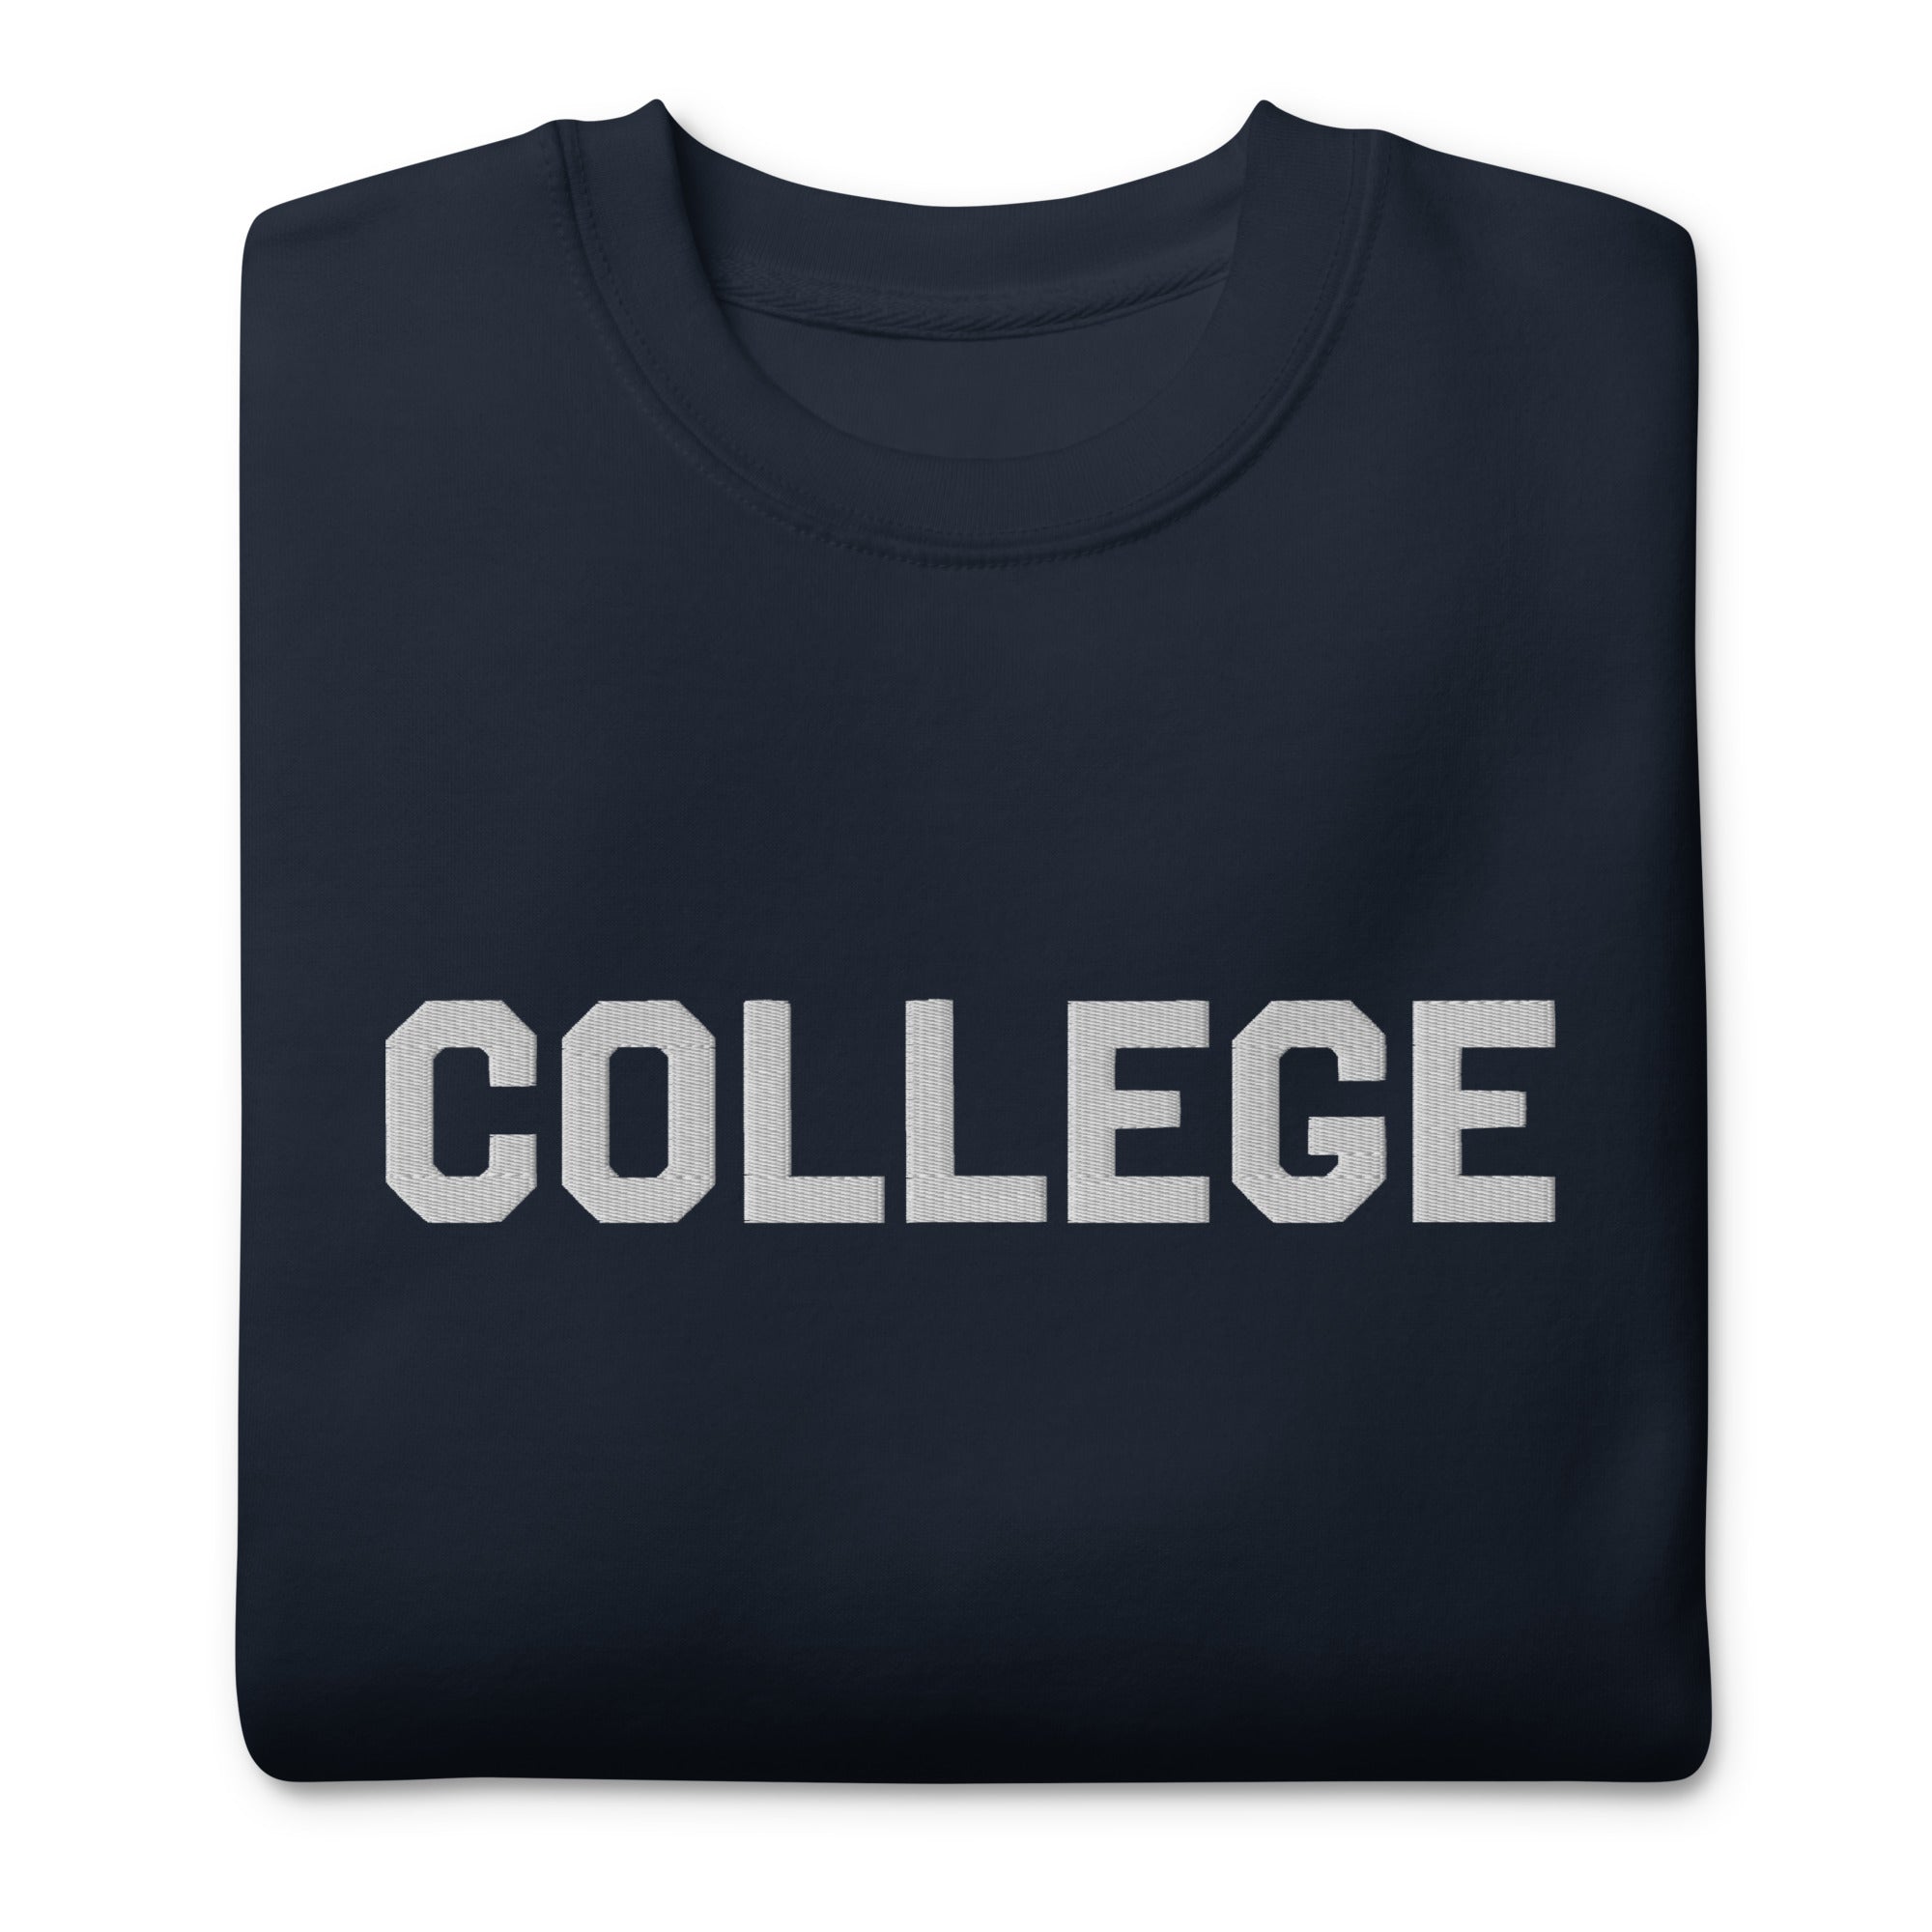 Bluto College Embroidered Sweatshirt